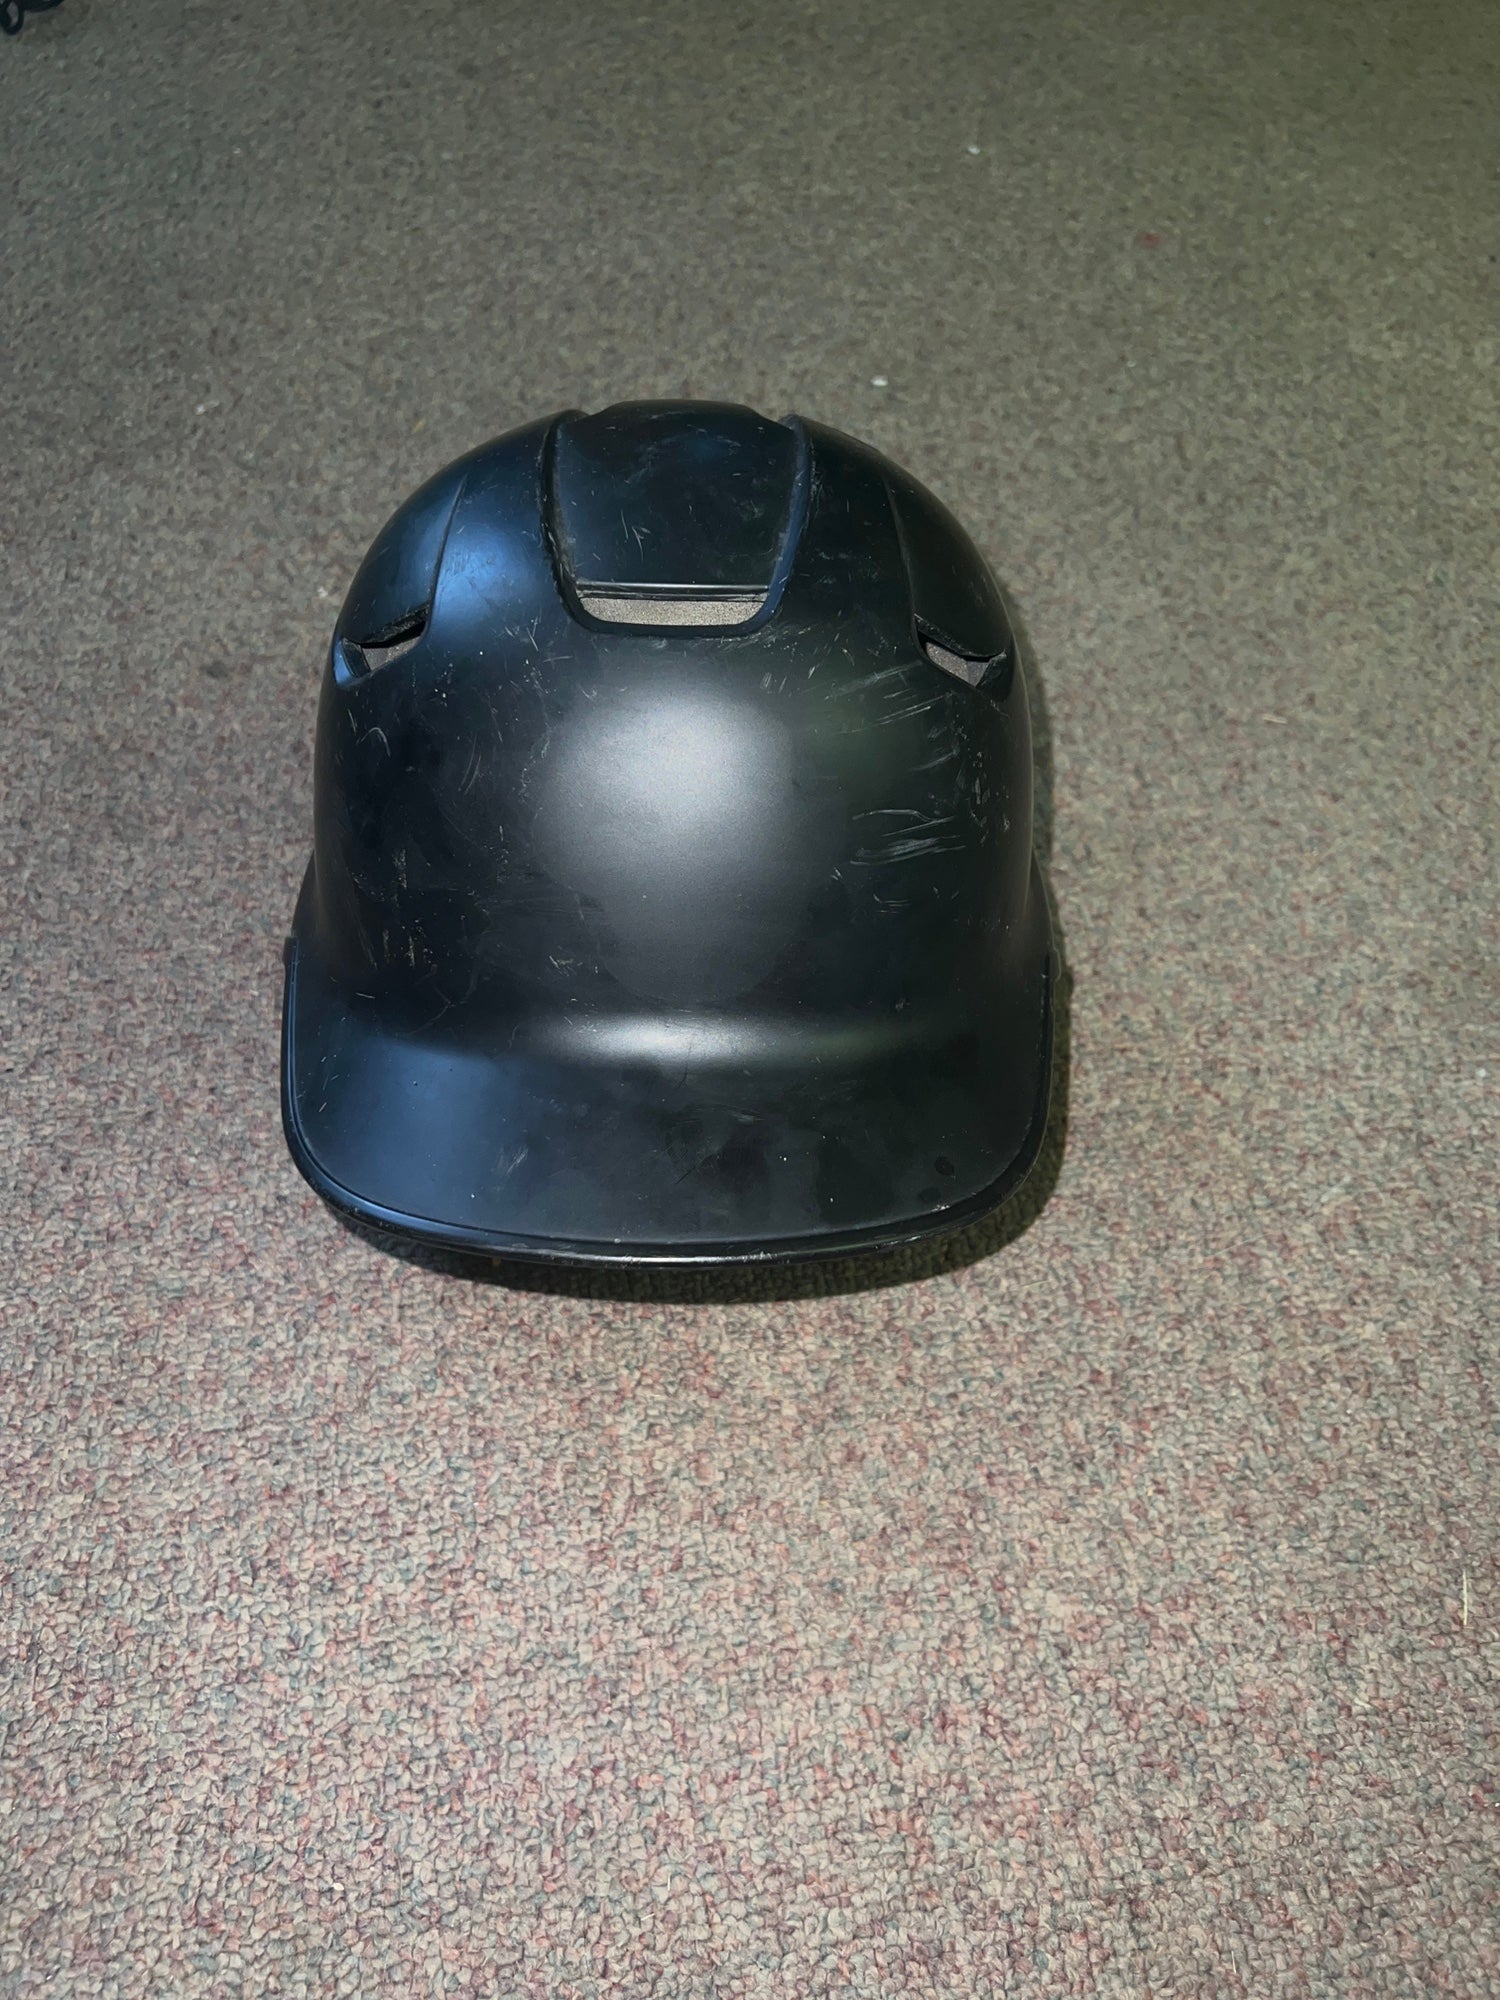 Easton Z5 2.0 Baseball Batting Helmet Senior Maroon